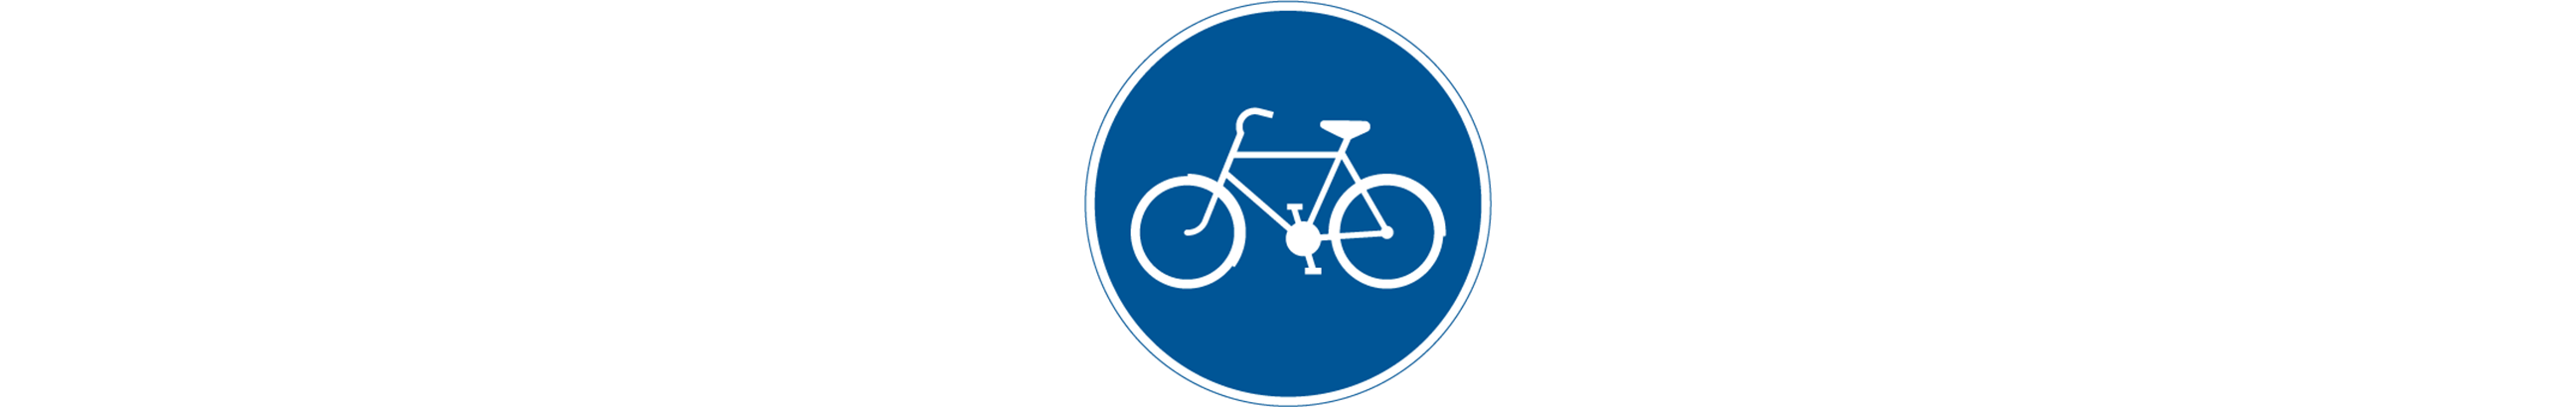 vägmärke för cykelbana